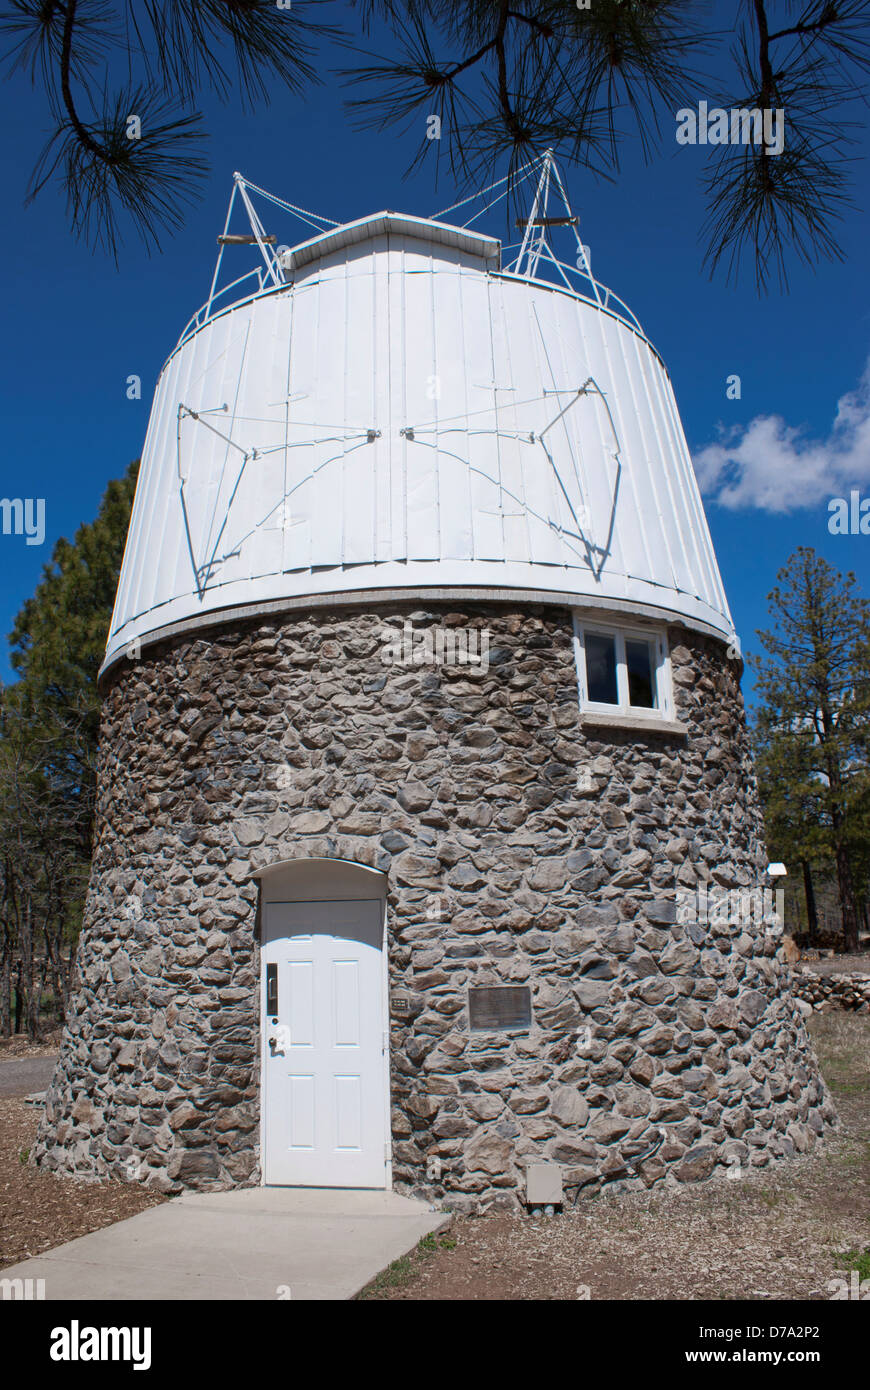 Estados Unidos Flagstaff Arizona Plutón cúpula del telescopio del Observatorio Lowell Mars Hill Foto de stock